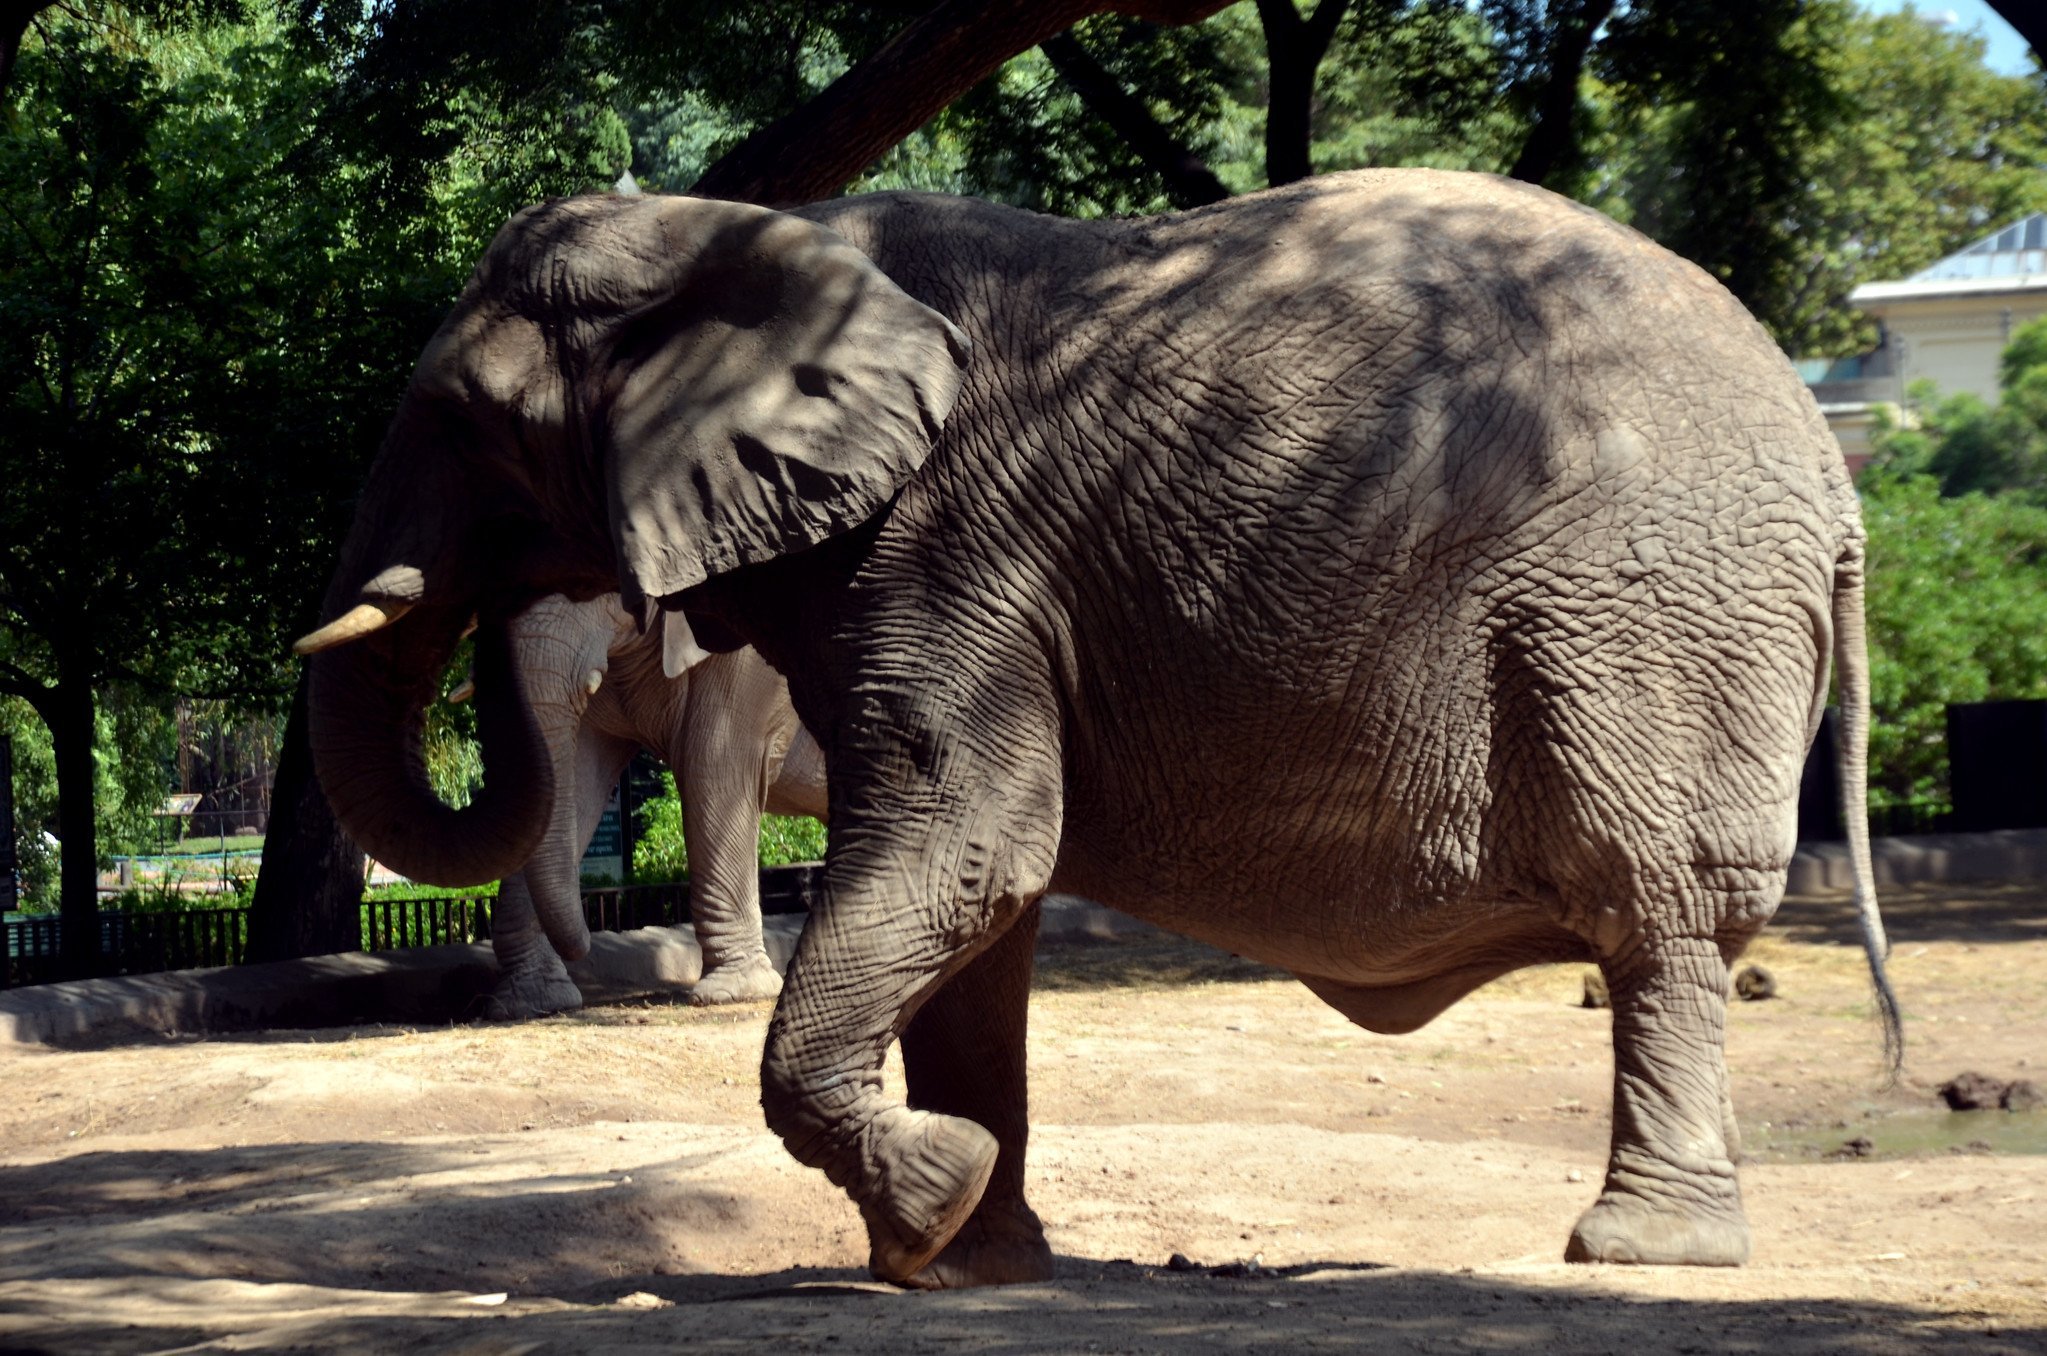 Elefante caminando por la tierra. | Imagen: Flickr